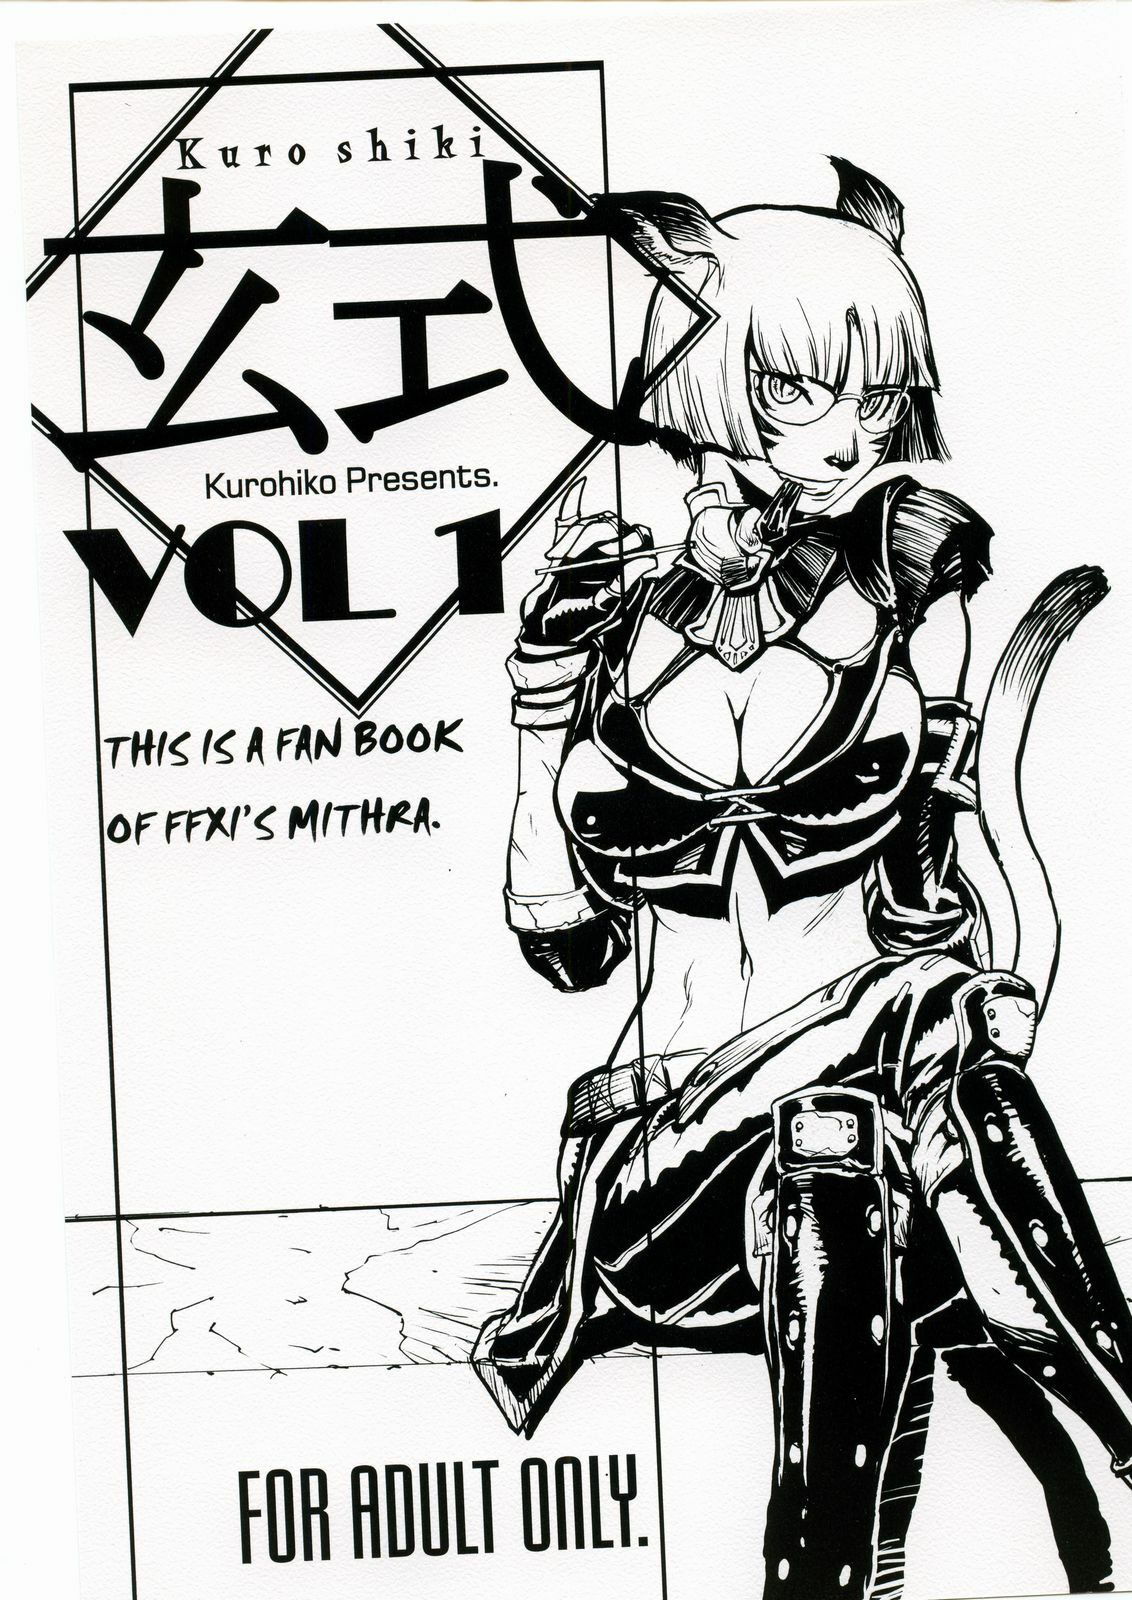 [Kuroshiki (Kurohiko)] Kuroshiki Vol. 1 (Final Fantasy XI) page 1 full